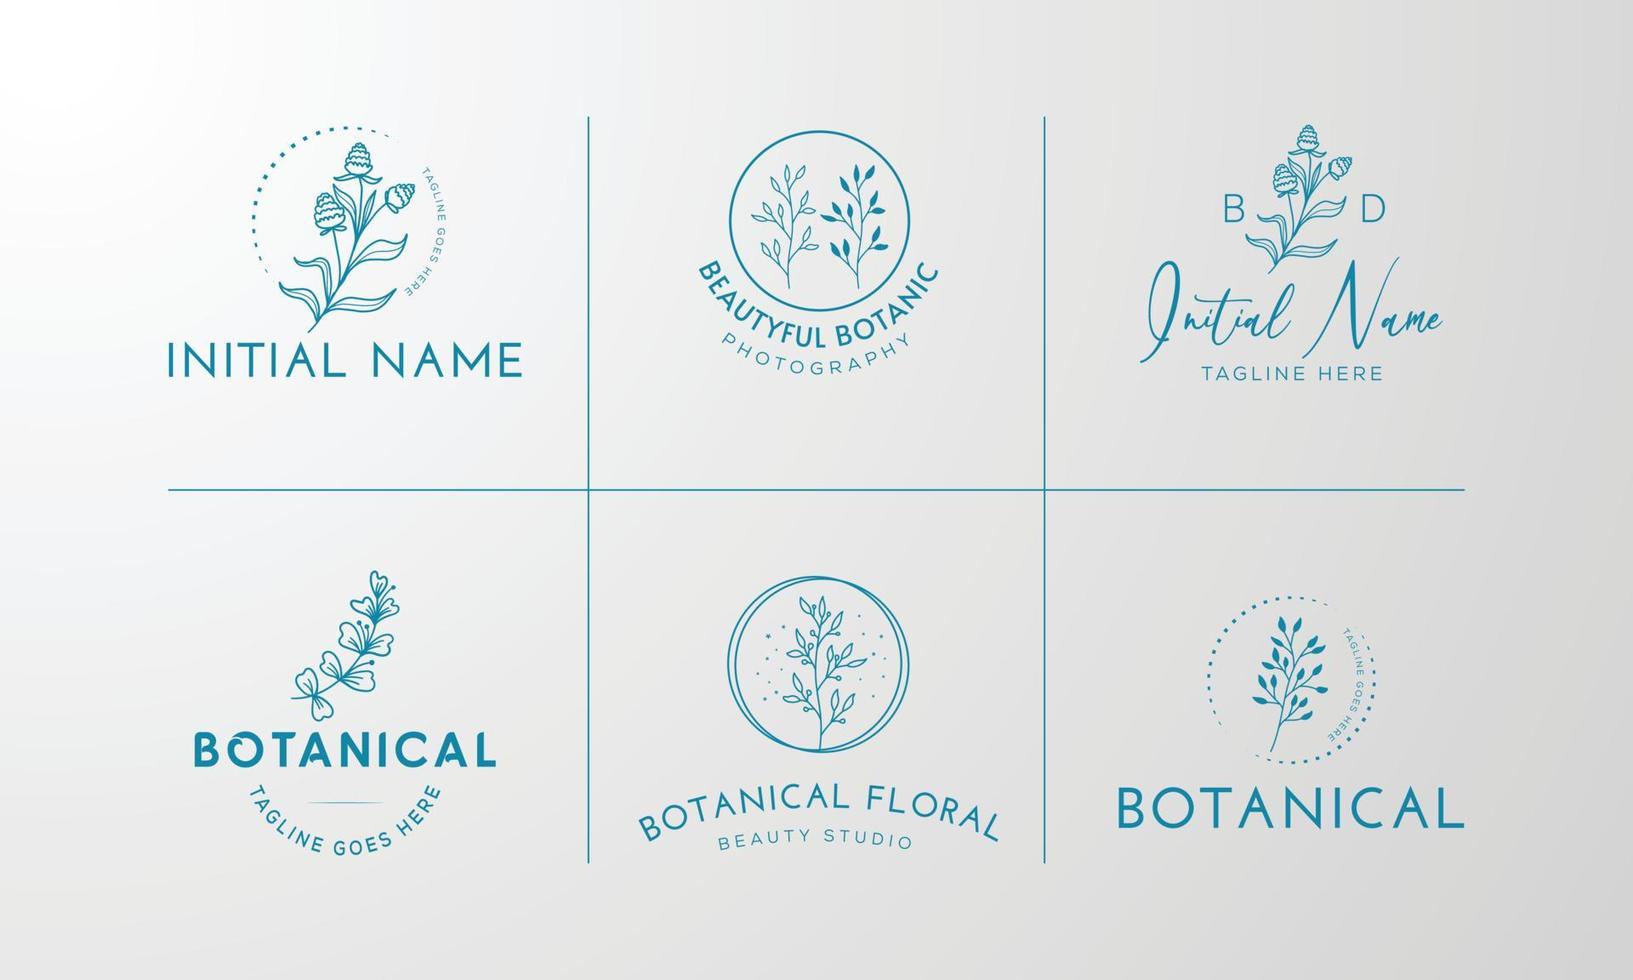 florales element botanisches handgezeichnetes logo mit wilden blumen und blättern.logo für spa- und schönheitssalon, boutique, bioladen, hochzeit, blumendesigner, interieur, fotografie, kosmetik. vektor